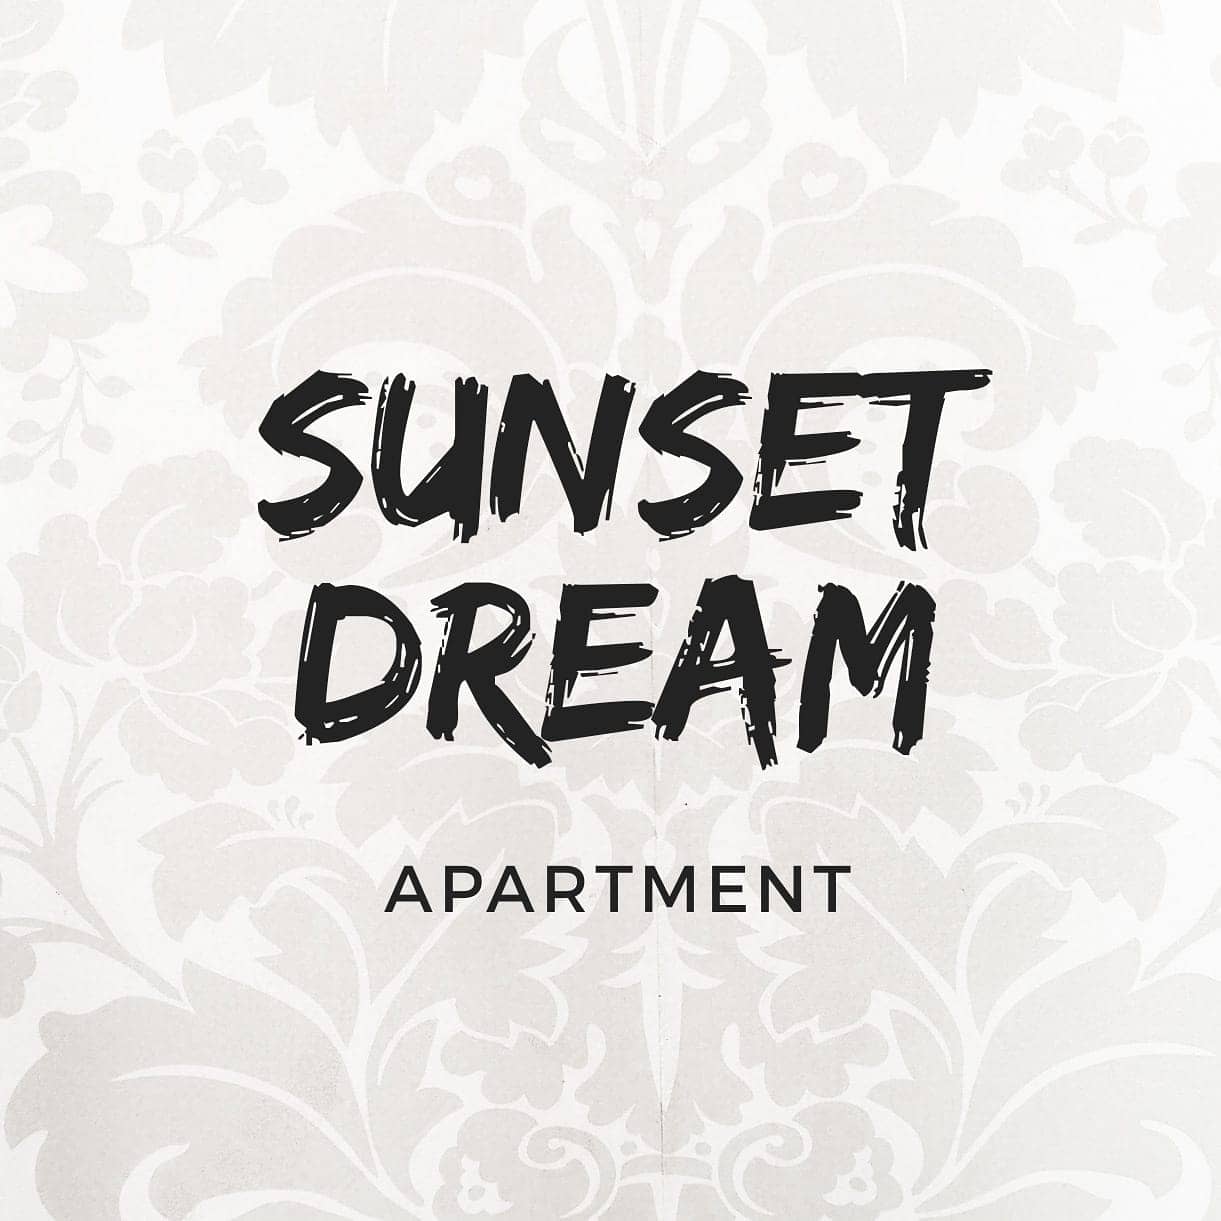 Sunset dream apartment